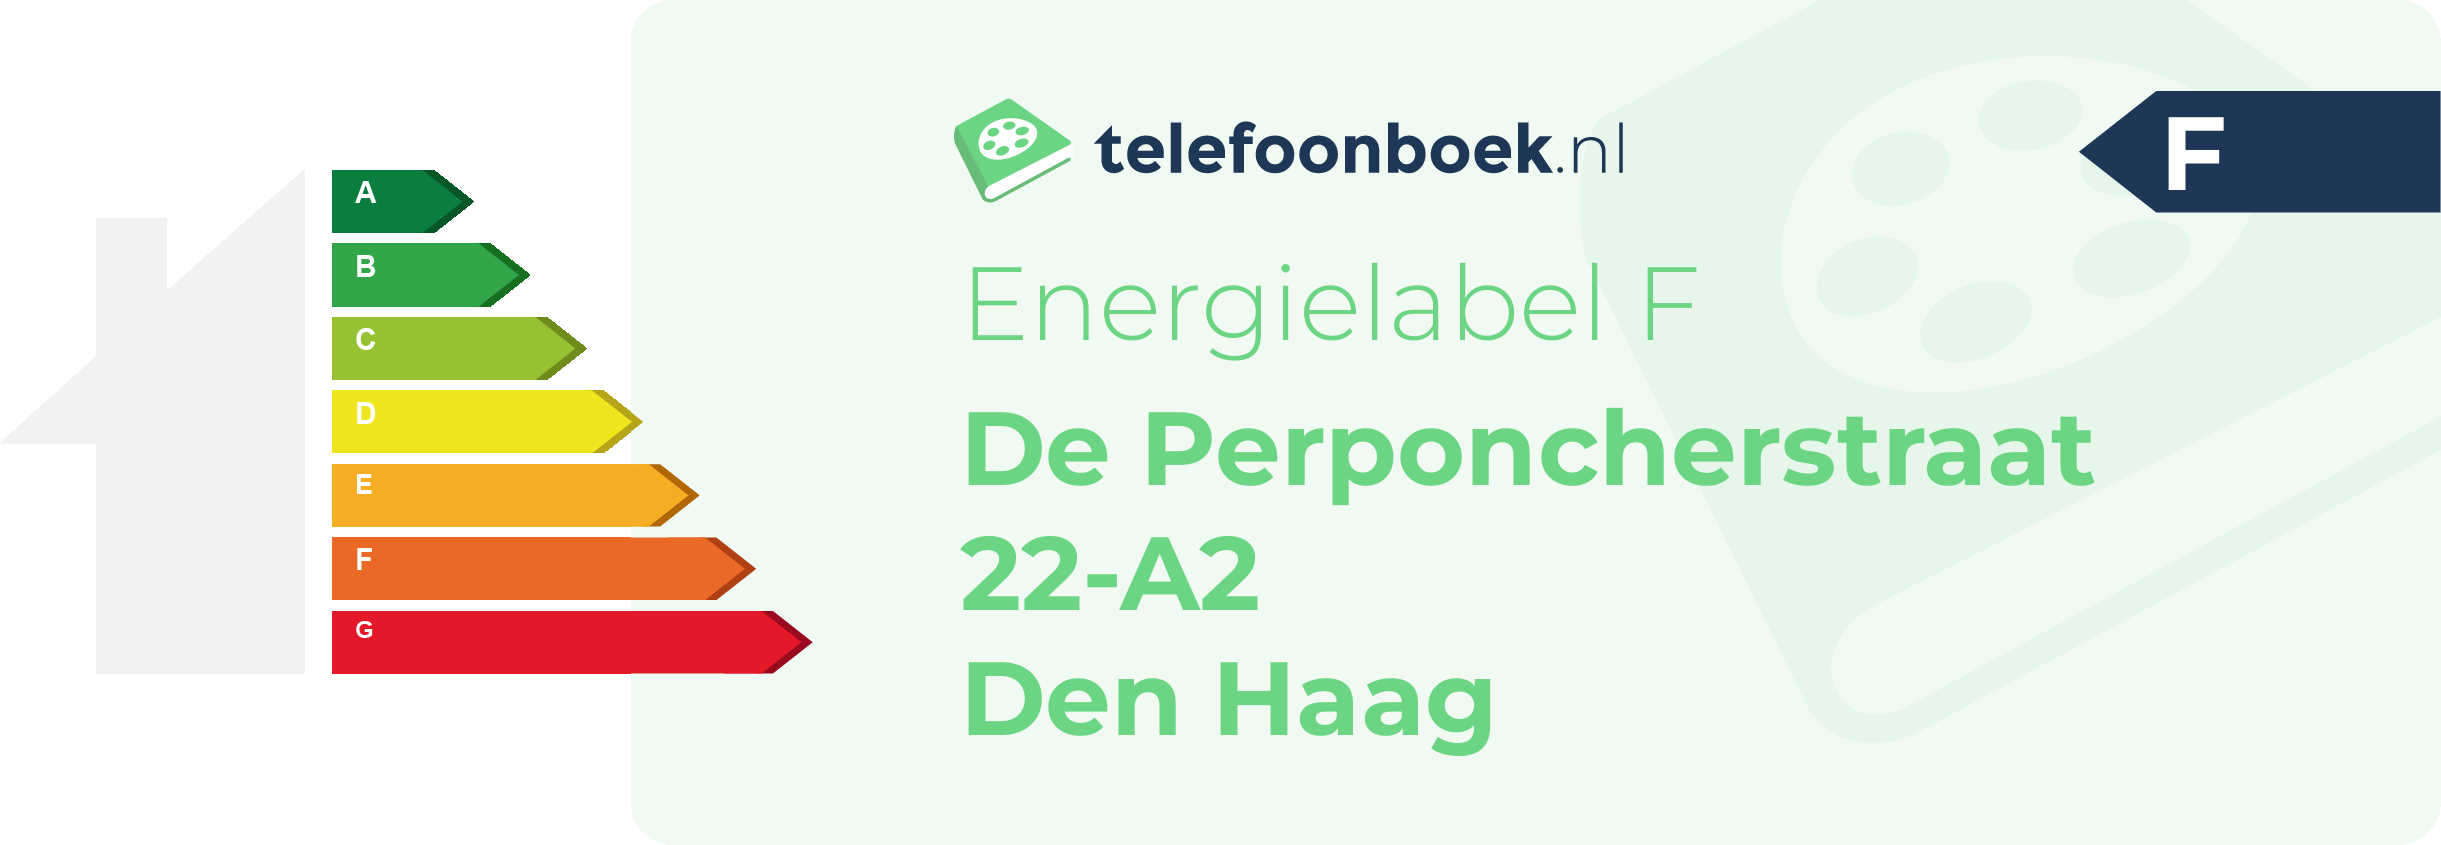 Energielabel De Perponcherstraat 22-A2 Den Haag